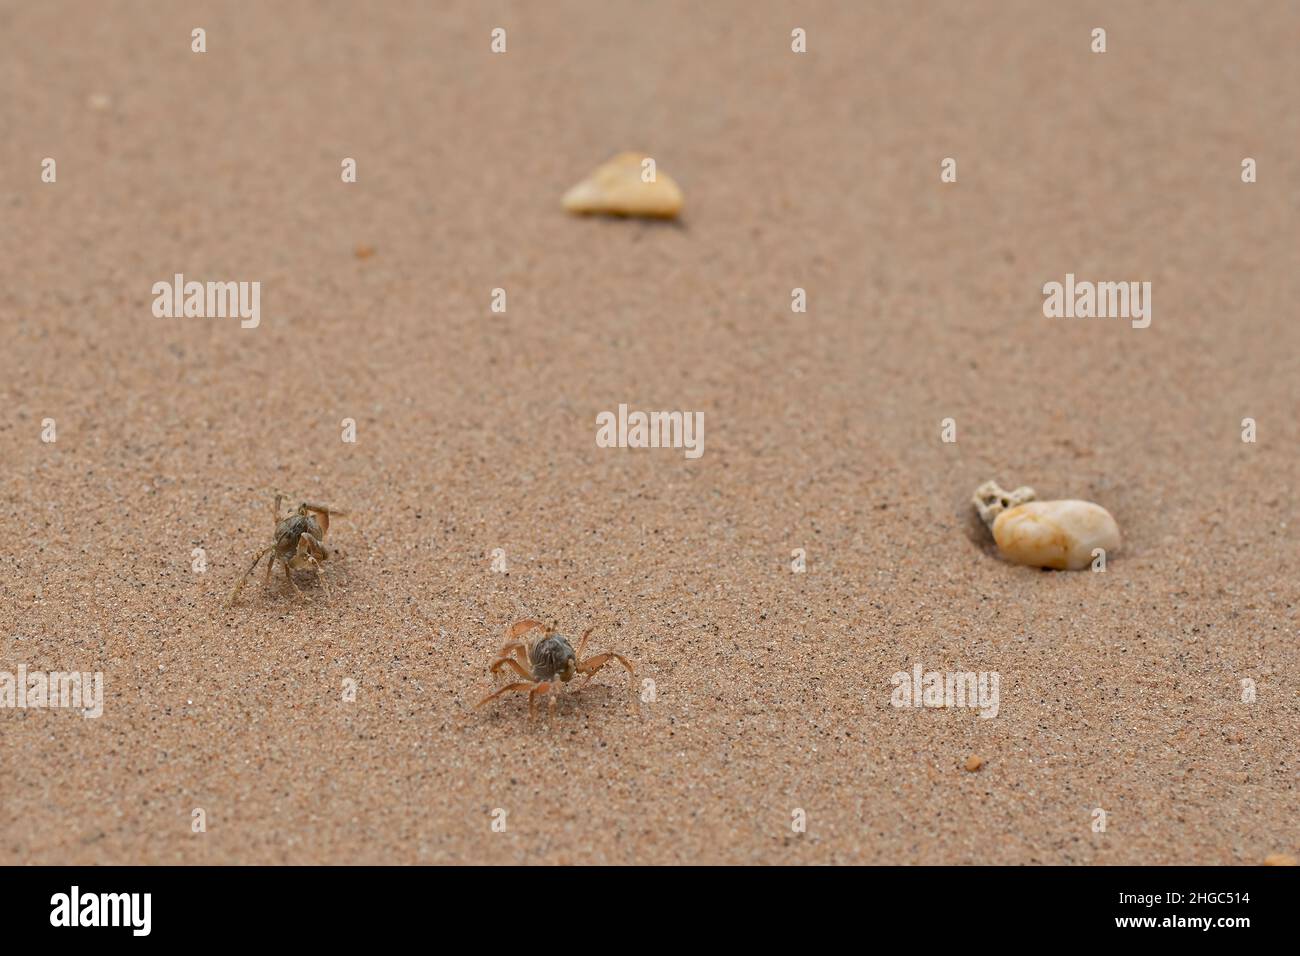 Ein paar Krabben laufen schnell an einem Sandstrand mit ein paar Kieselsteinen. Selektive Fokuspunkte Stockfoto